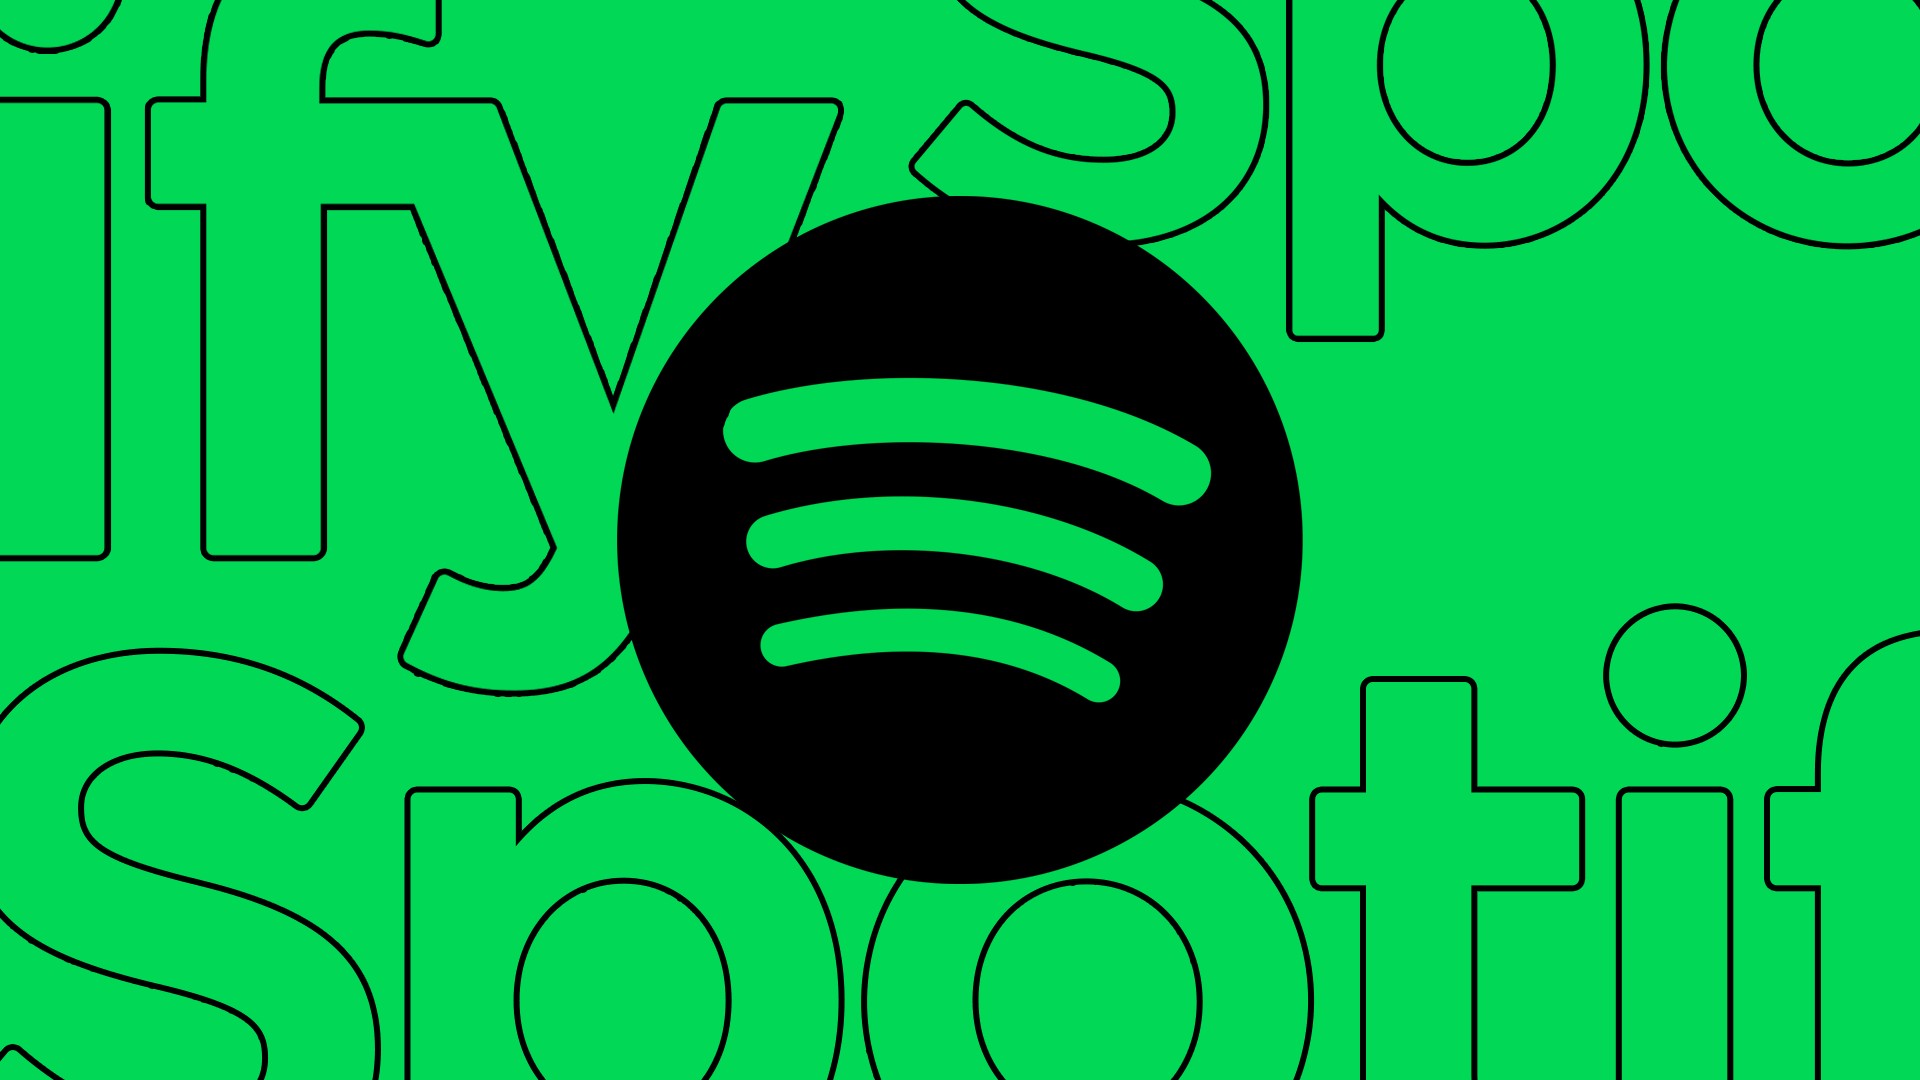 Playlists para estudar: veja 6 opções para ouvir no Spotify agora